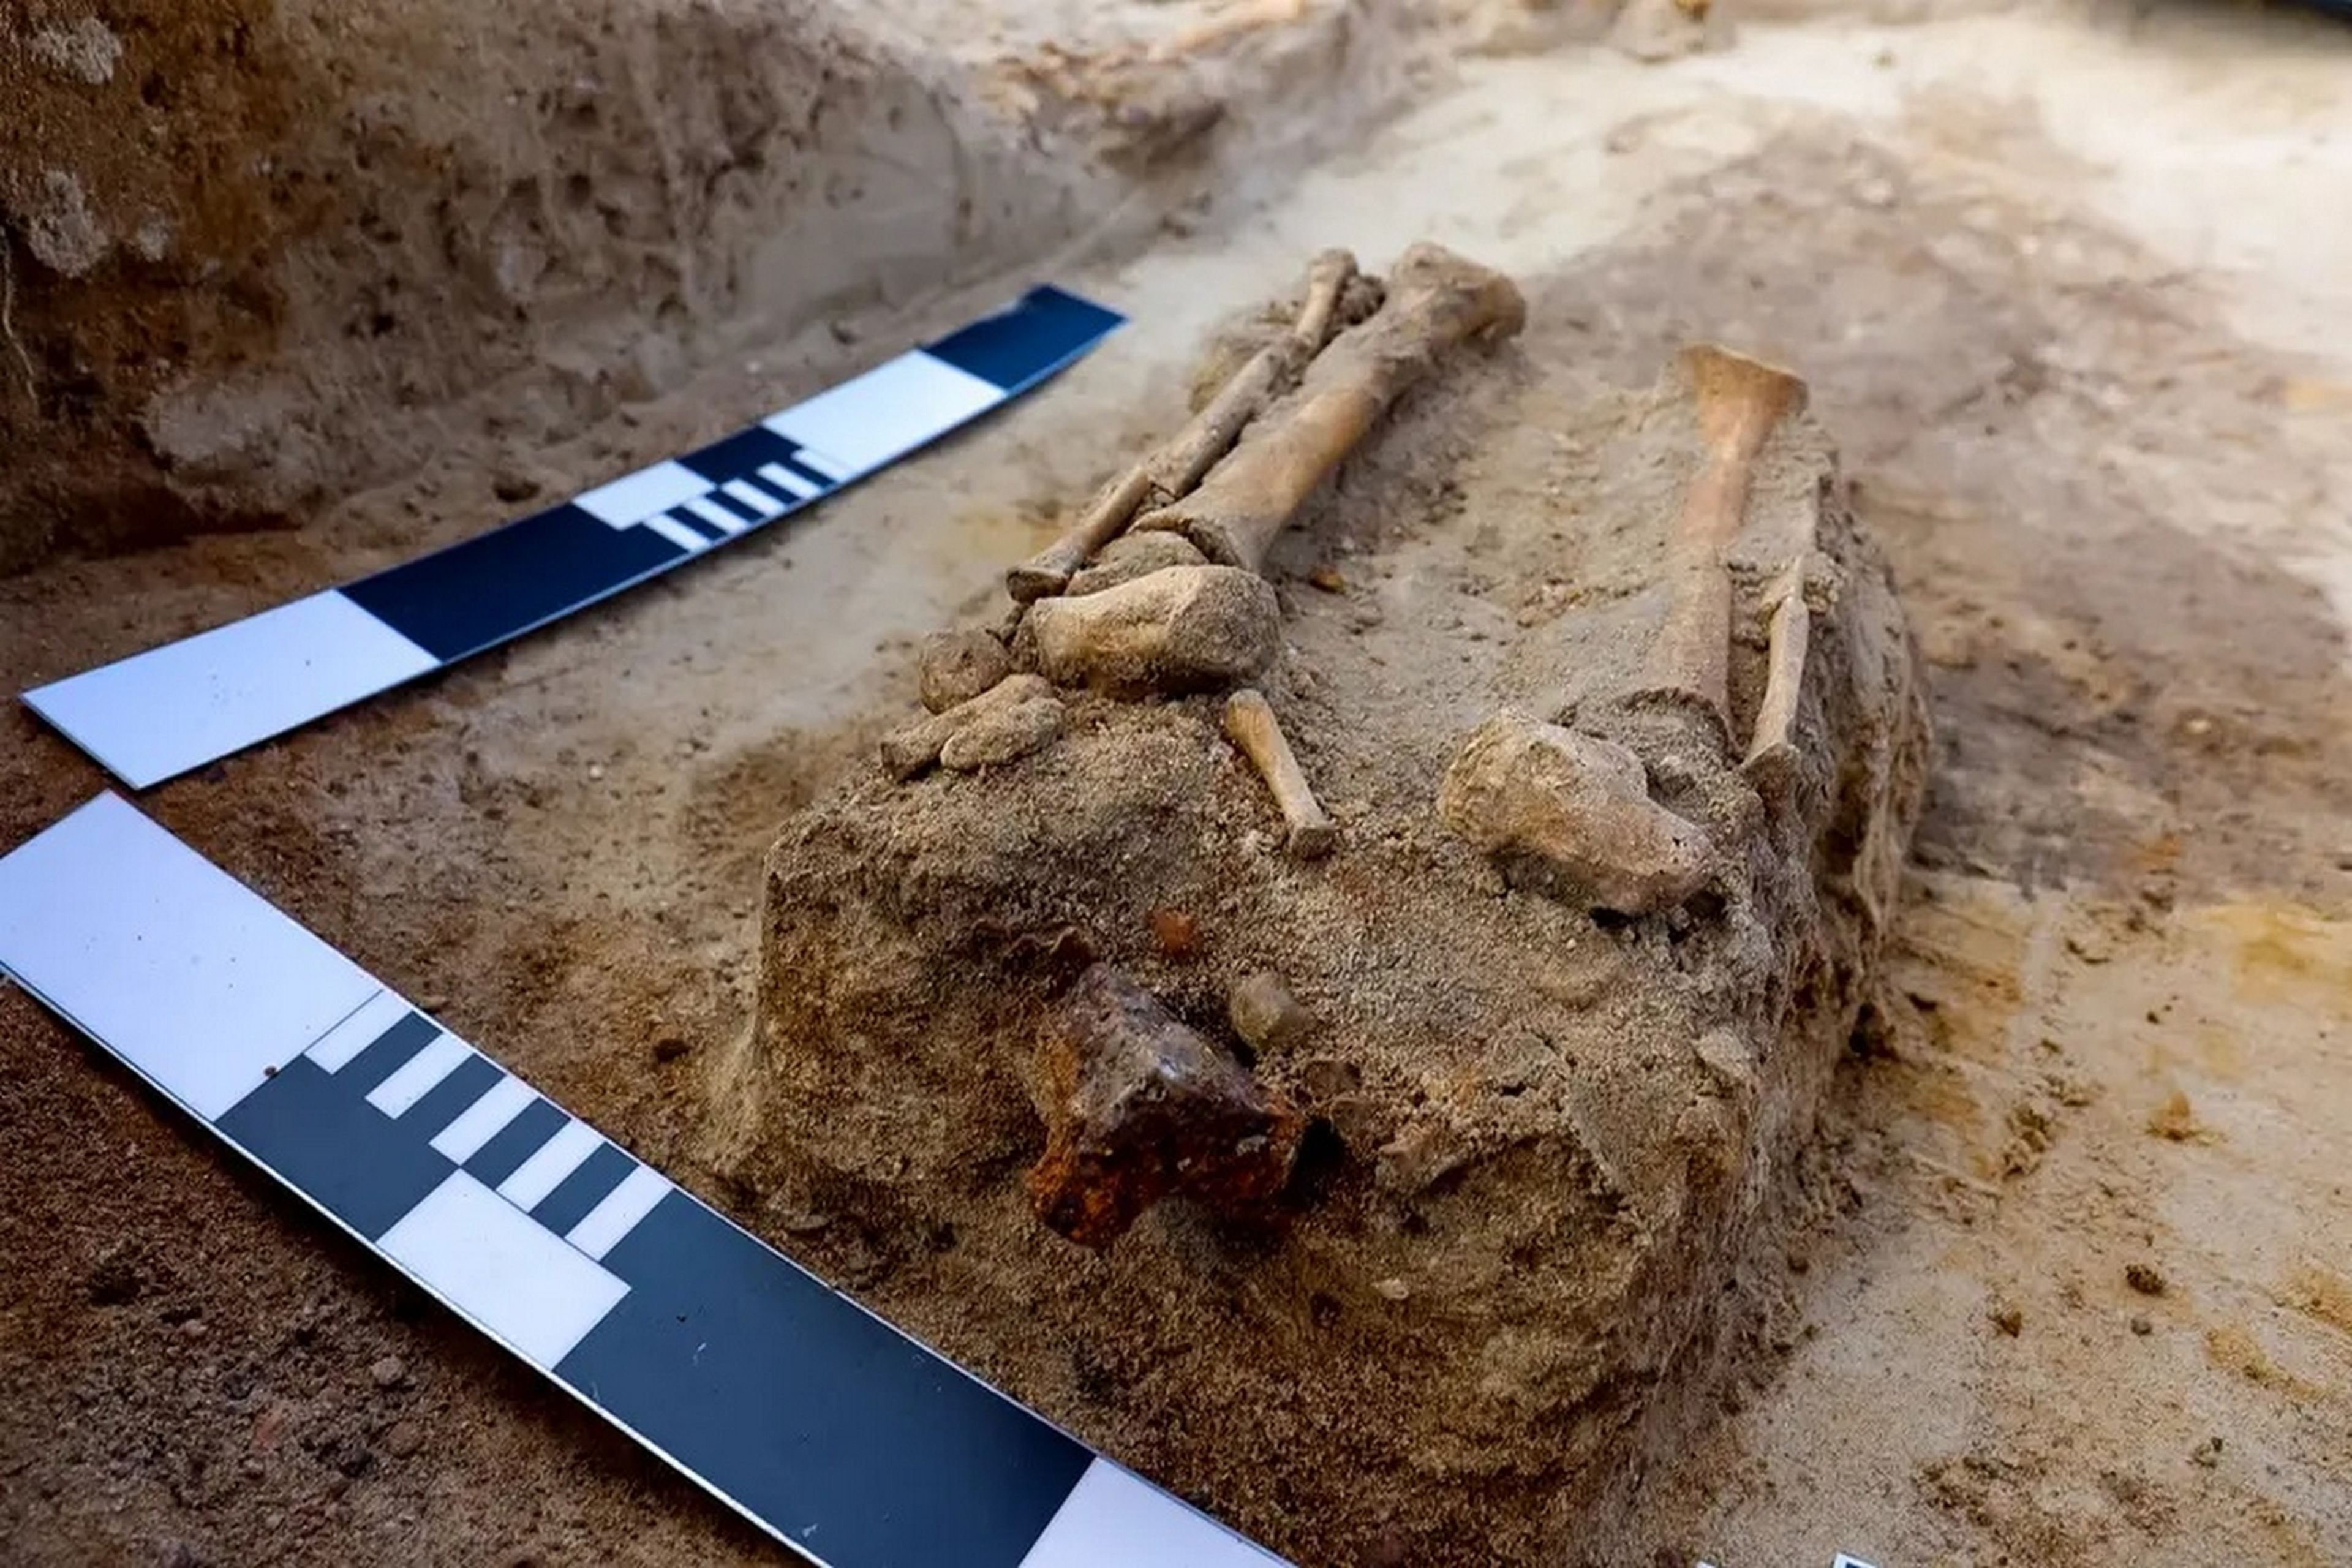 Encuentran la tumba de un "niño vampiro" atado con candados y enterrado boca abajo